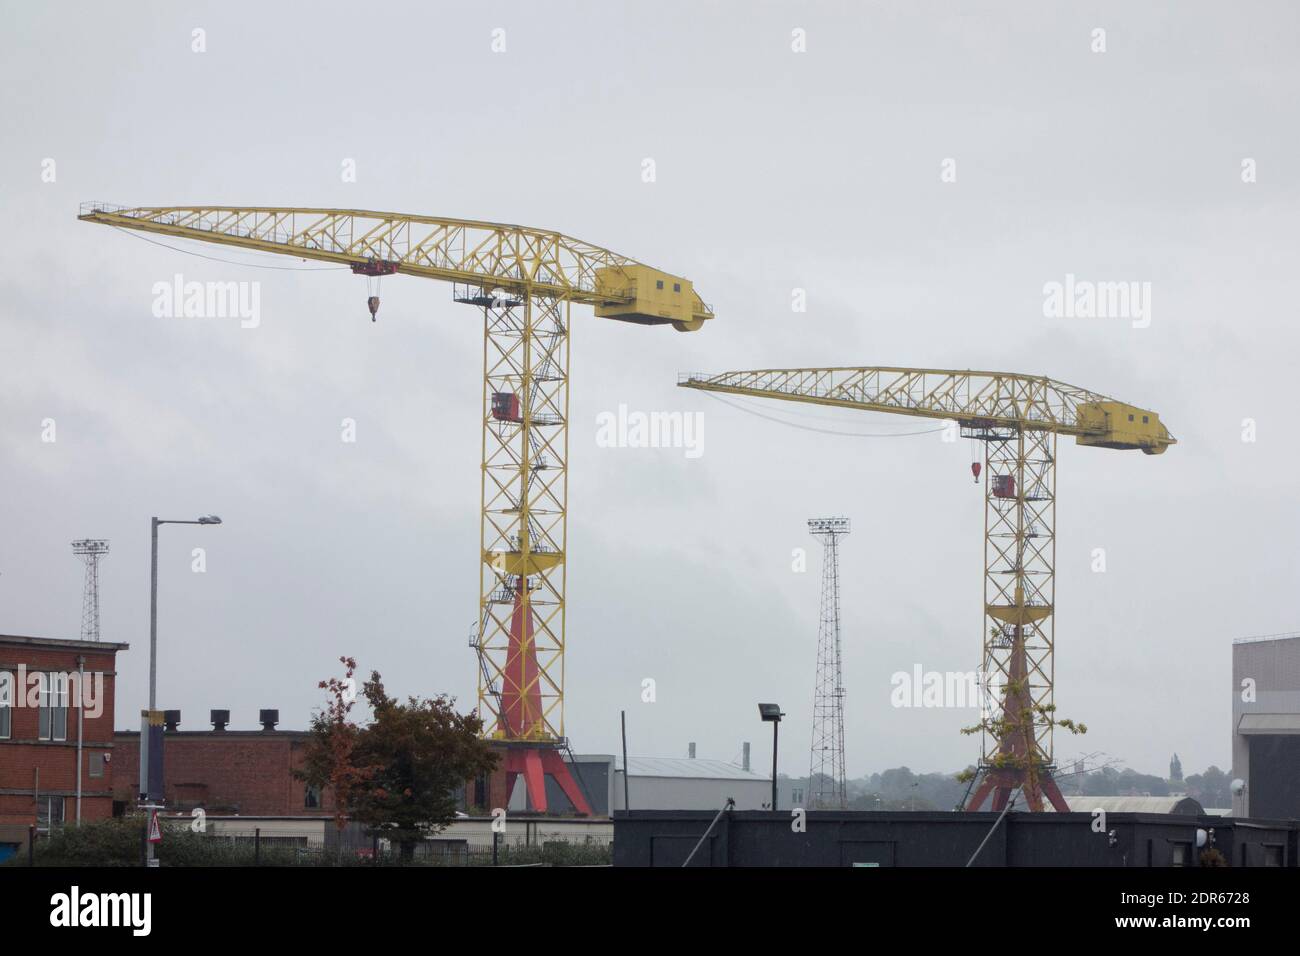 an industrial cargo port in Belfast in Northern Ireland, UK Stock Photo